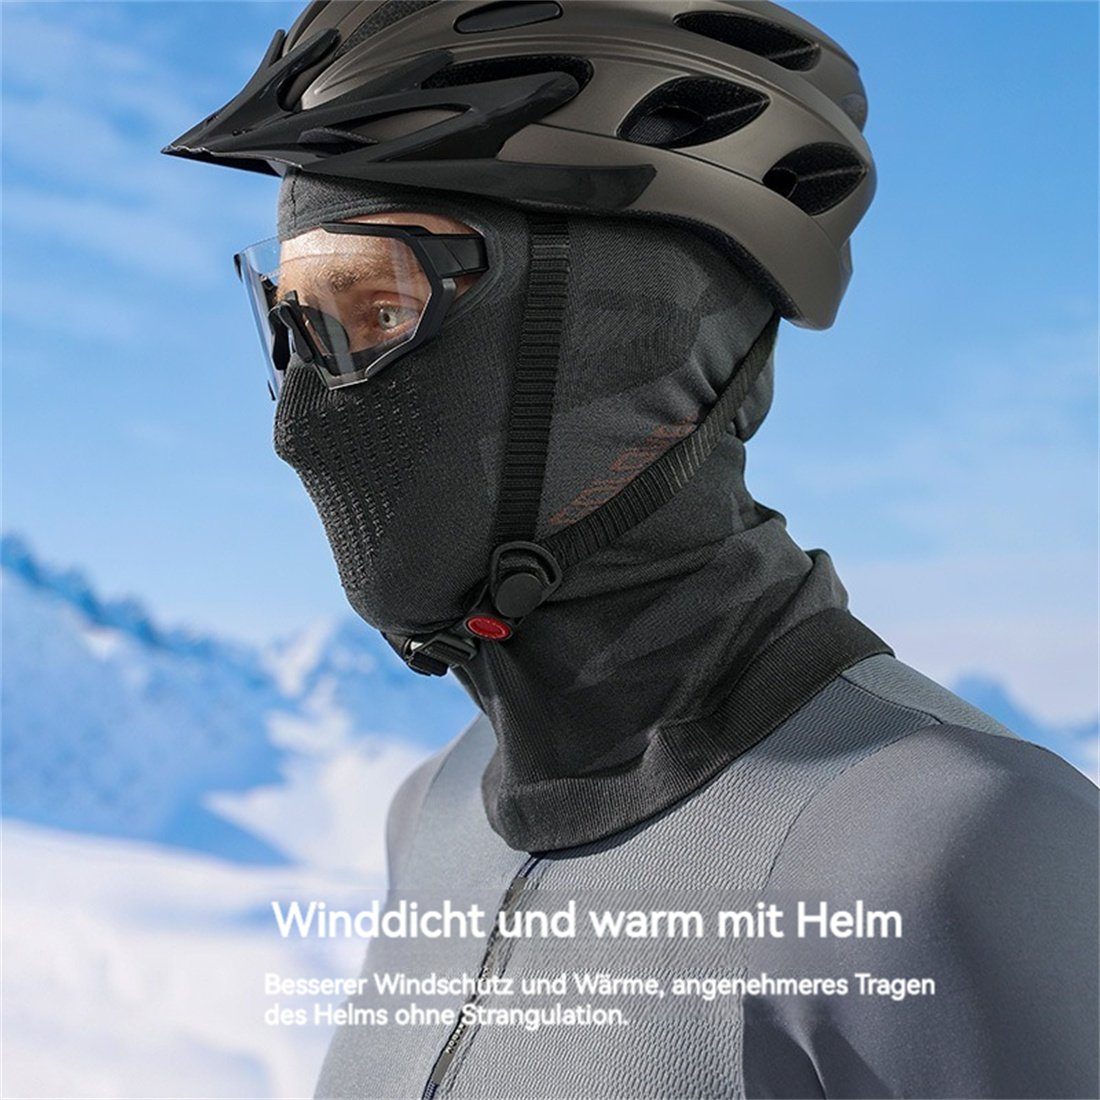 Hals grün DÖRÖY Winter Warme Schutz Maske, Unisex, C Maske Skifahren Sturmhaube Reiten